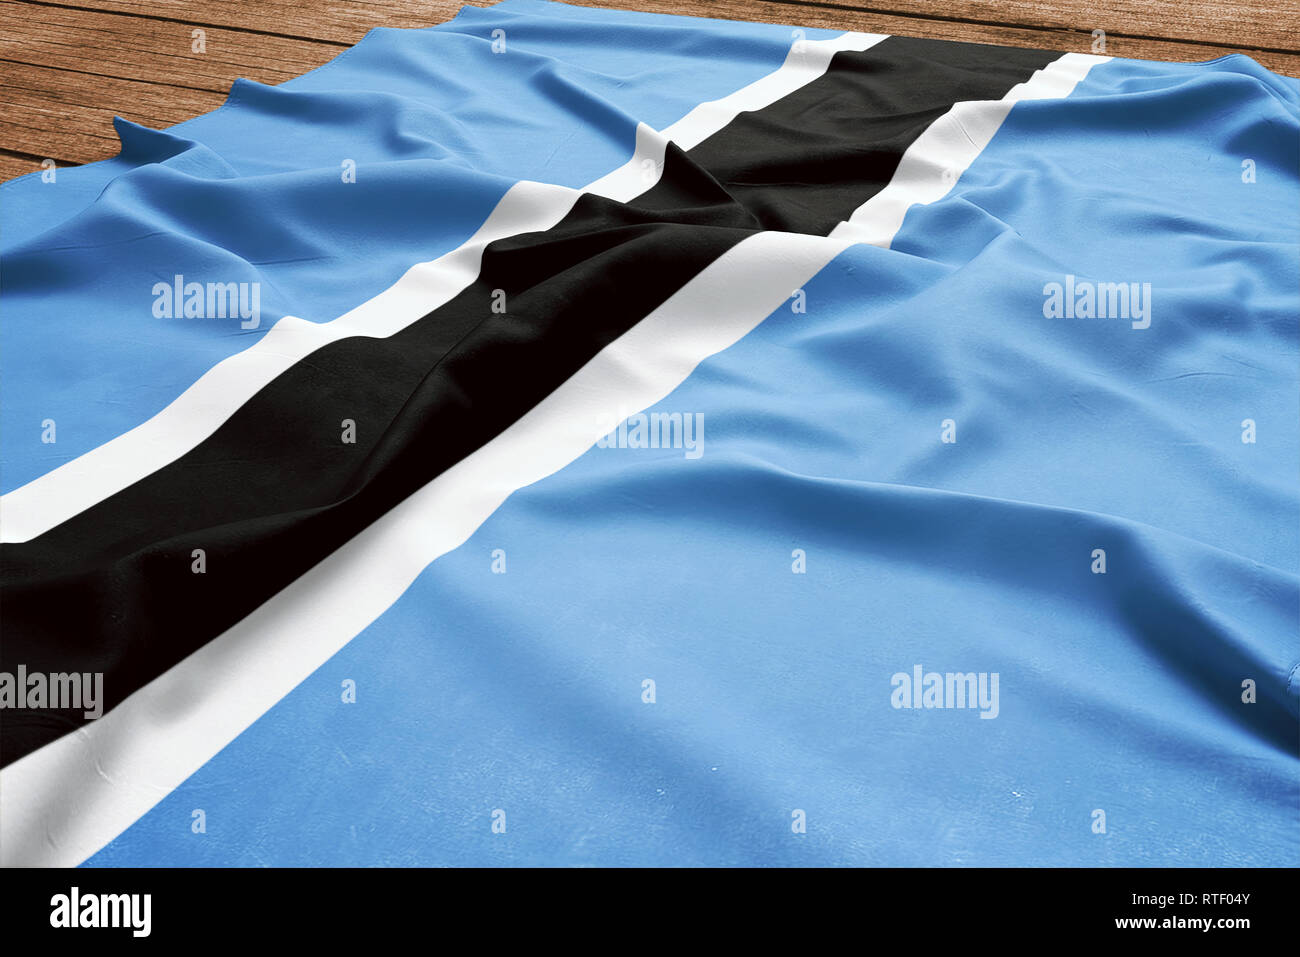 Bandiera del Botswana su una scrivania in legno sfondo. Seta flag Motswana vista dall'alto. Foto Stock